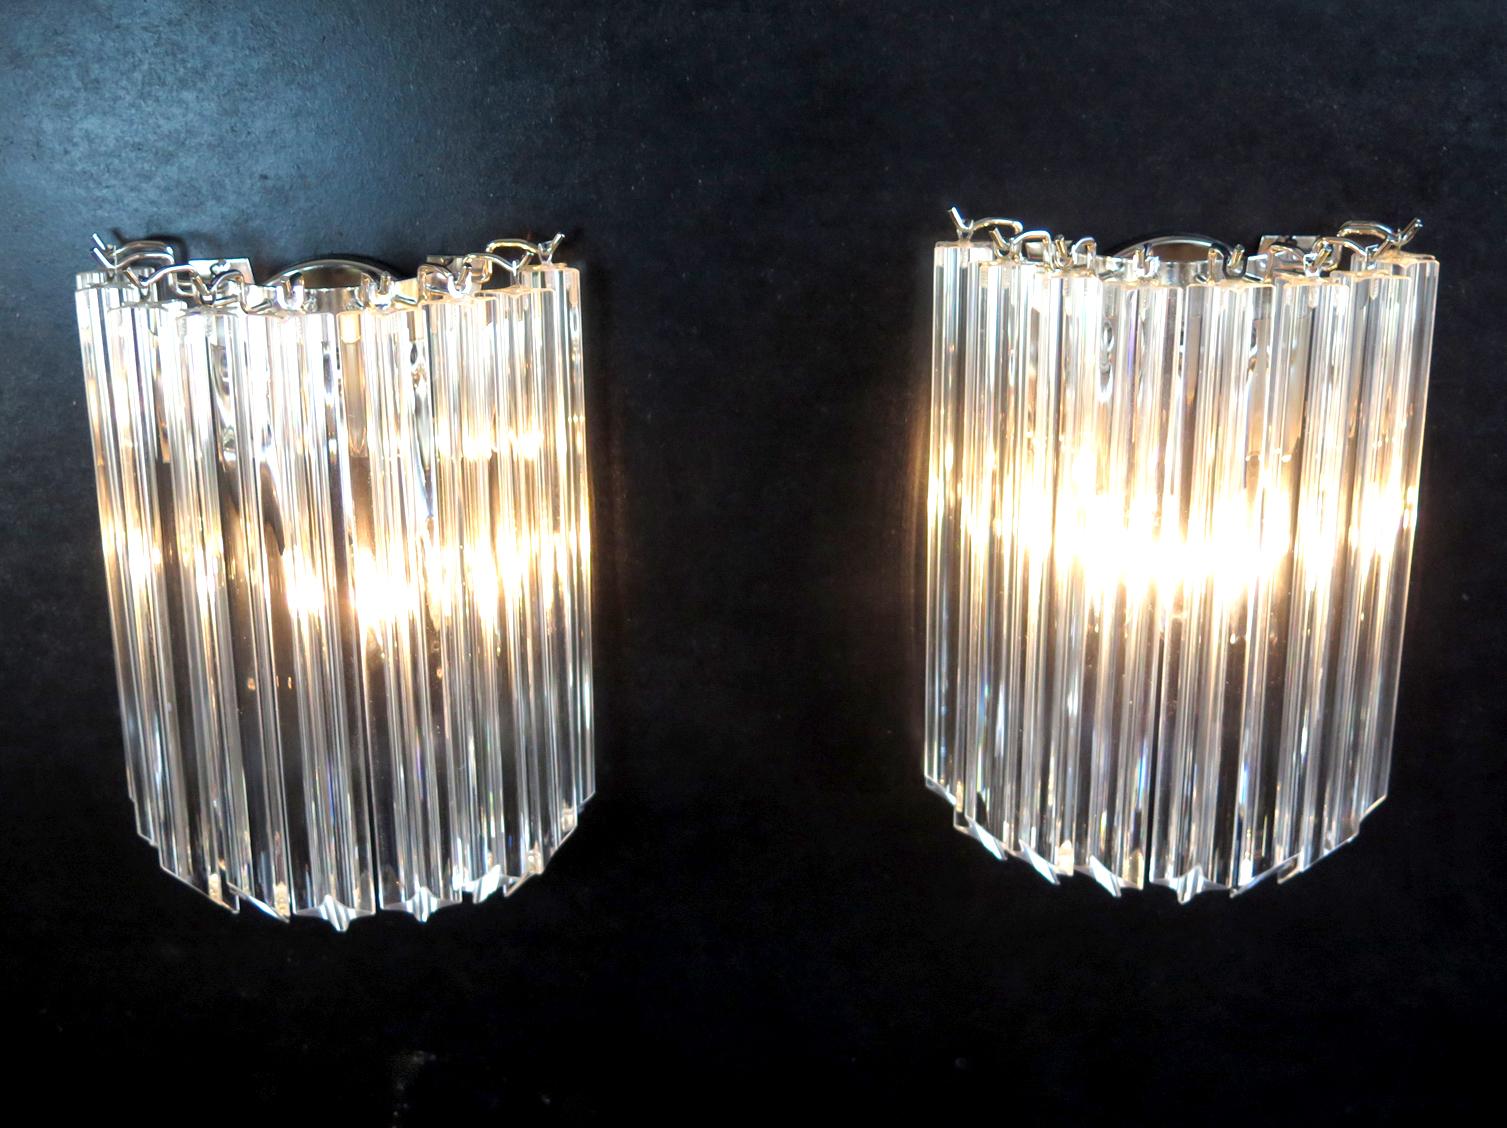 Fantastisches Paar von Vintage Murano Wandleuchte von 9 Murano-Kristall-Prisma (quadriedri) für jede Applique in einem verchromten Metallrahmen gemacht. Die Gläser sind durchsichtig.
Zeitraum: Ende des XX. Jahrhunderts
Abmessungen: 11,80 Zoll Höhe